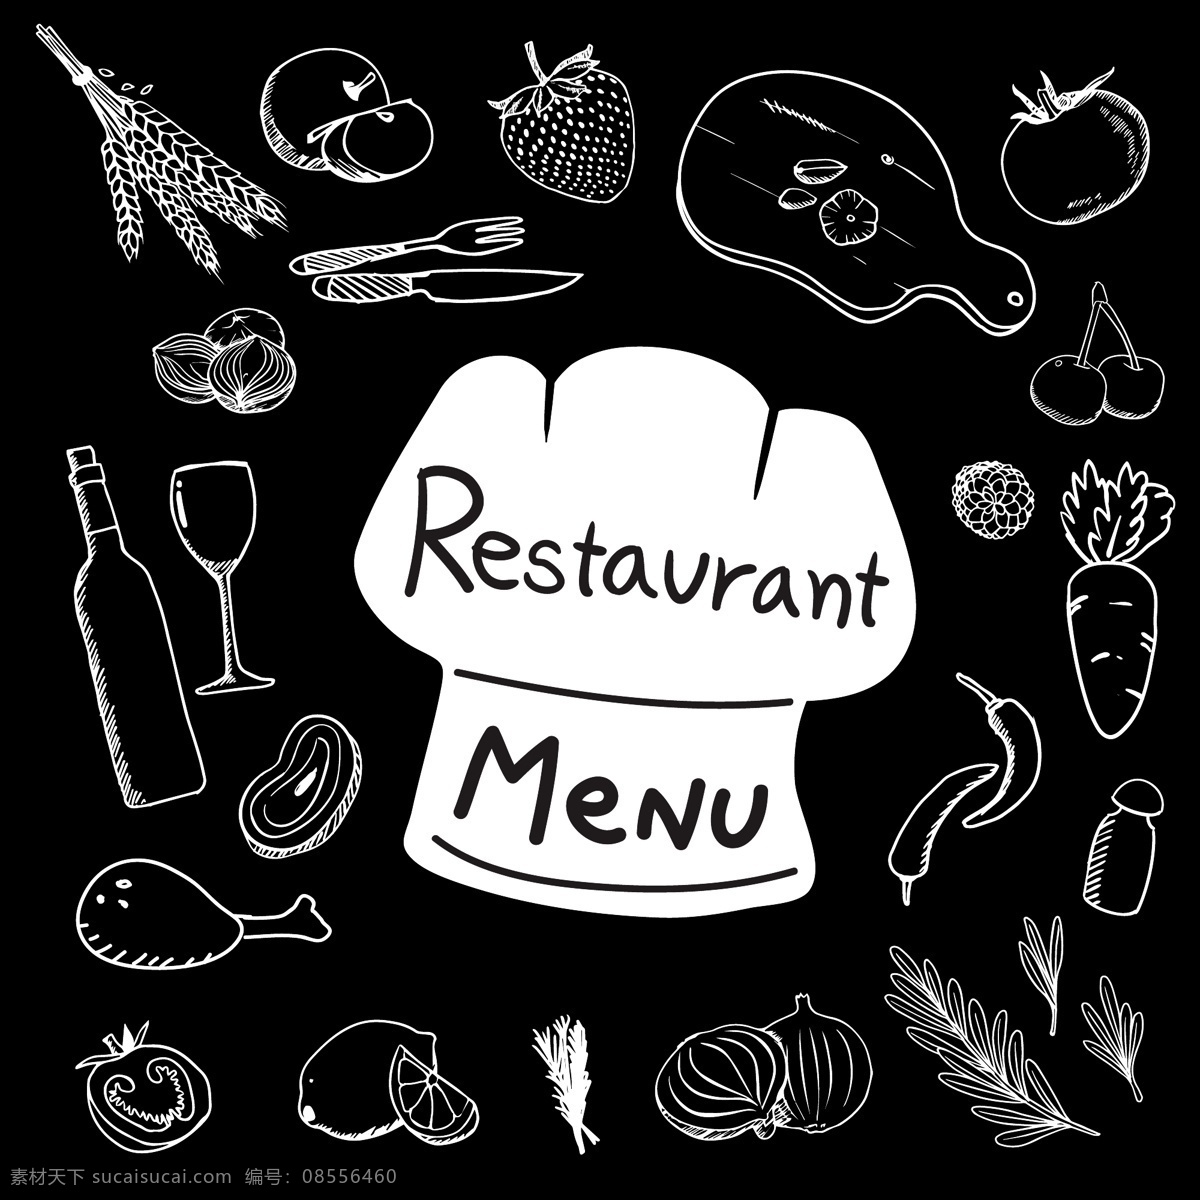 食物 元素 集合 采购产品食物 菜单 手 餐馆 手绘 餐馆菜单 粉笔 食物菜单 菜单餐馆 画 配料 收集